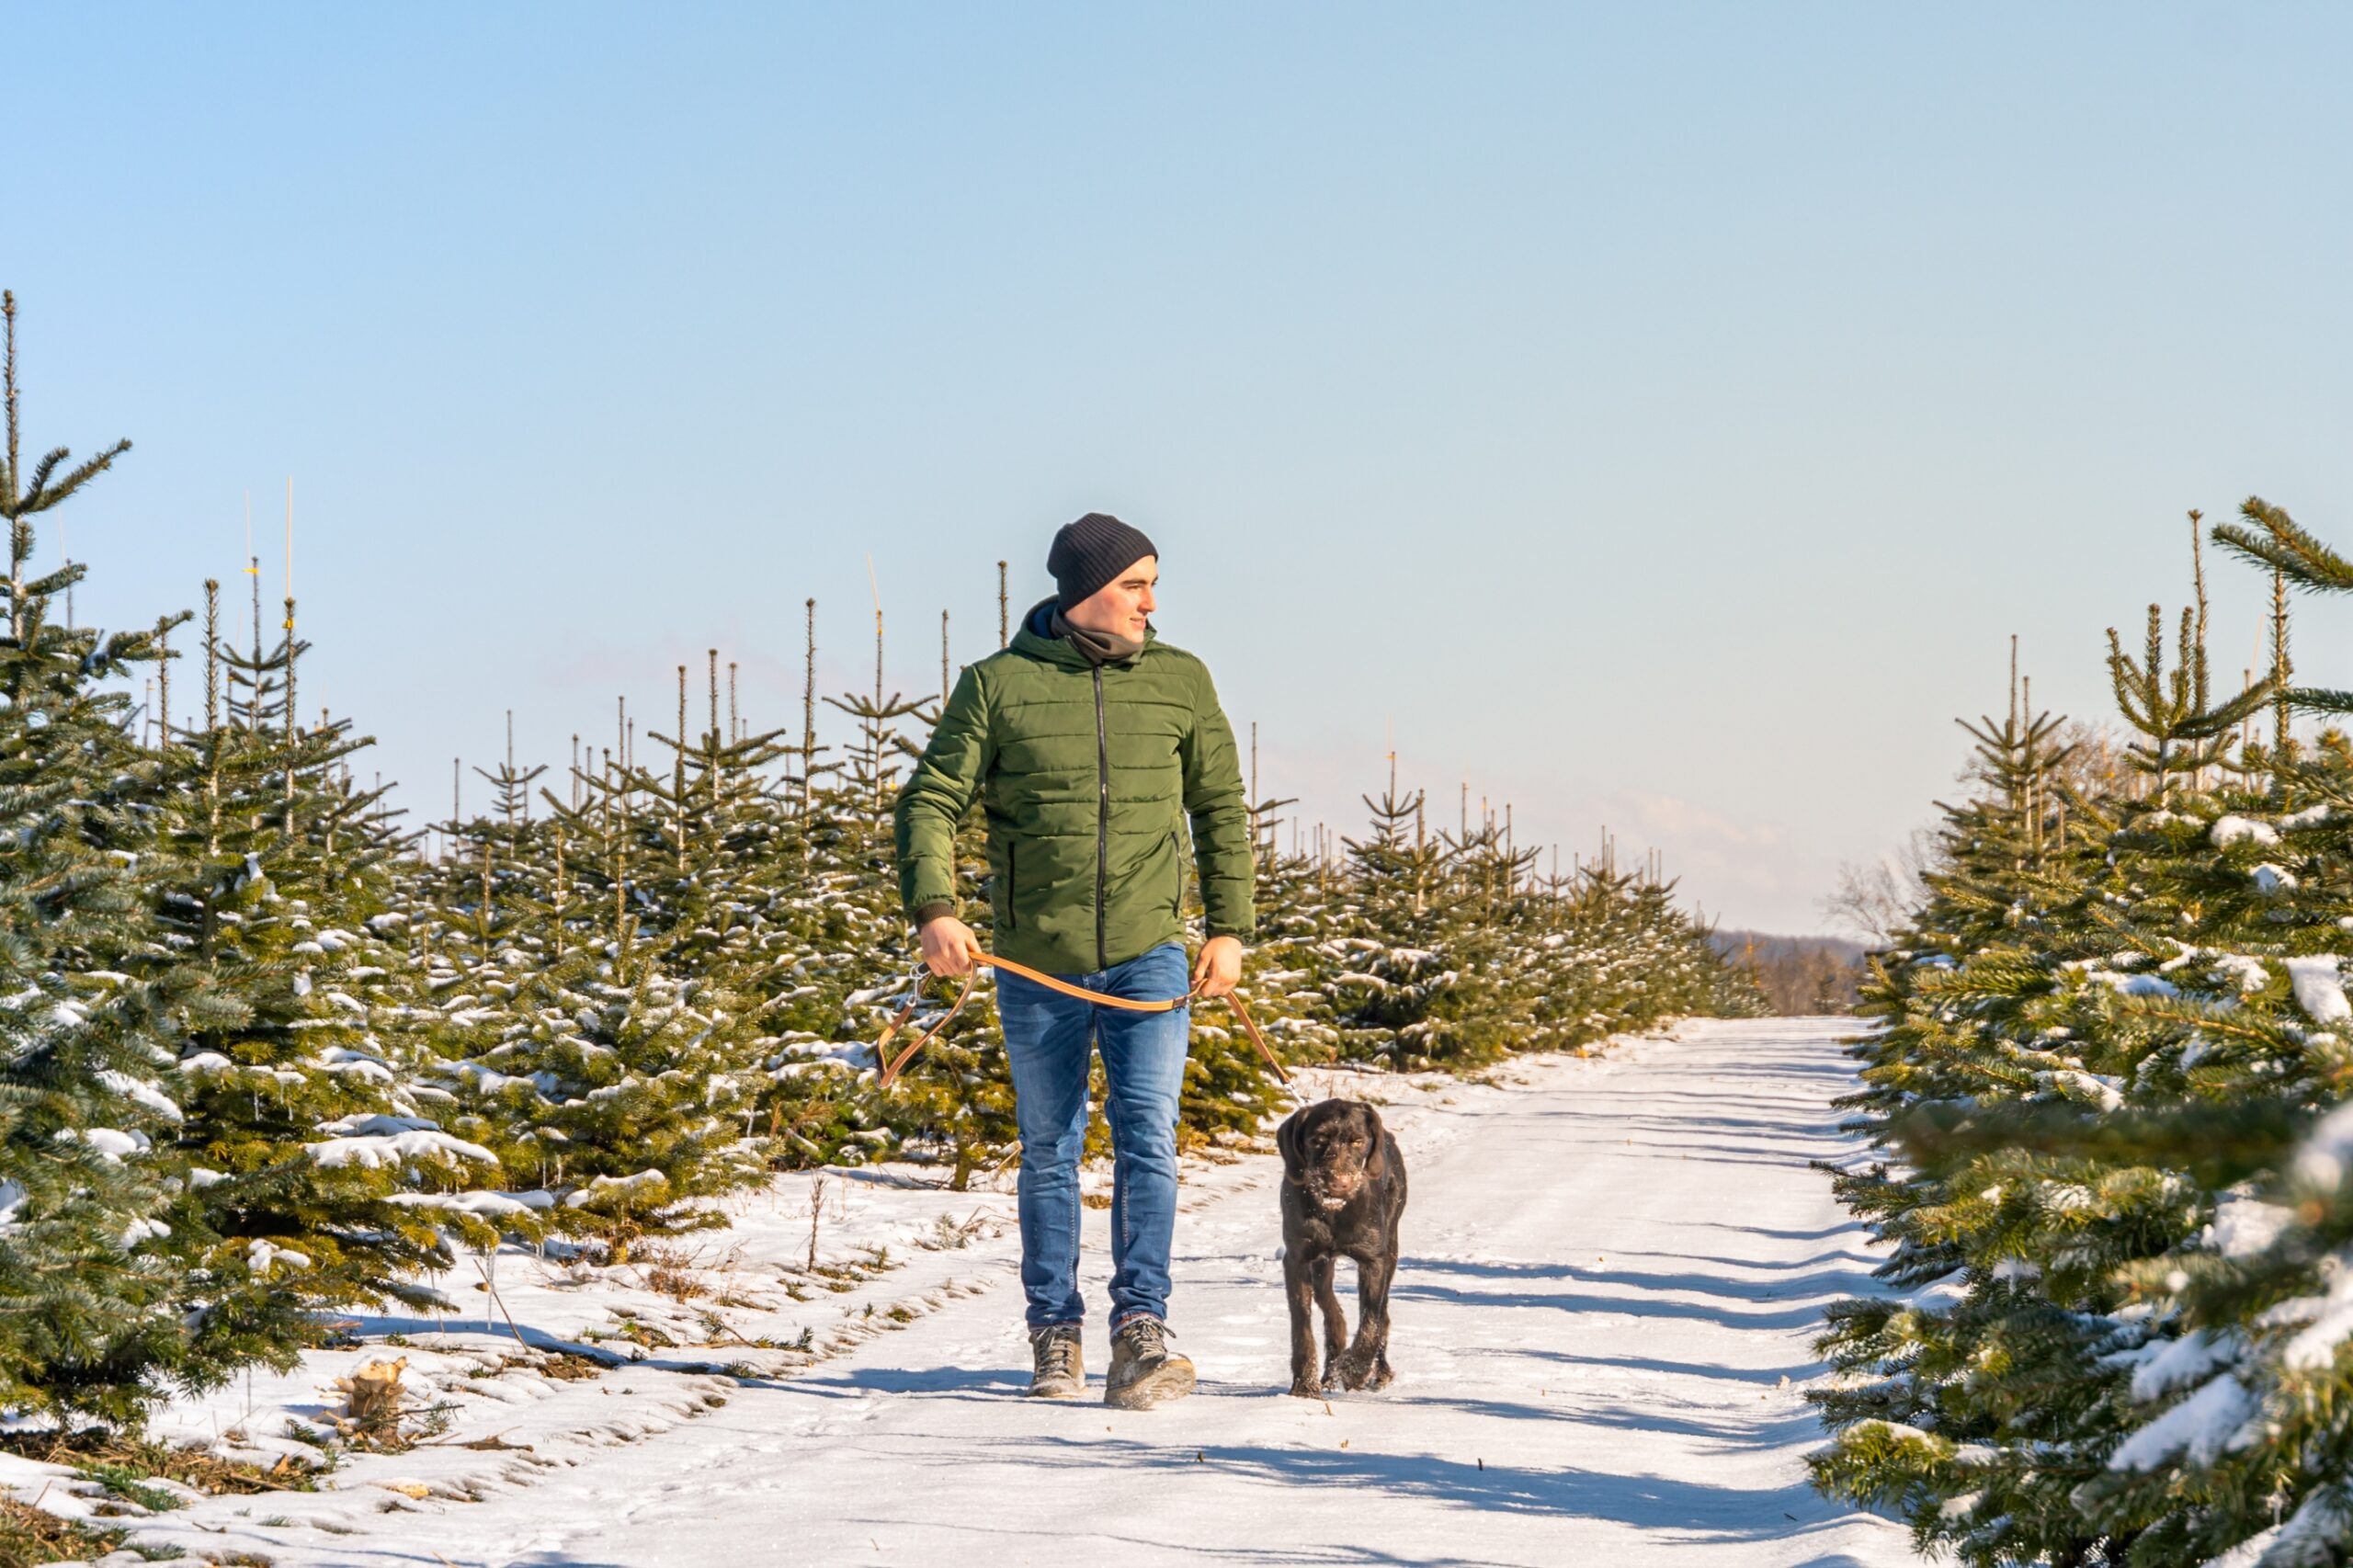 Hannes Stoll Inhaber Meine Tanne mit Hund in Kultur bei Weihnachtsbaum